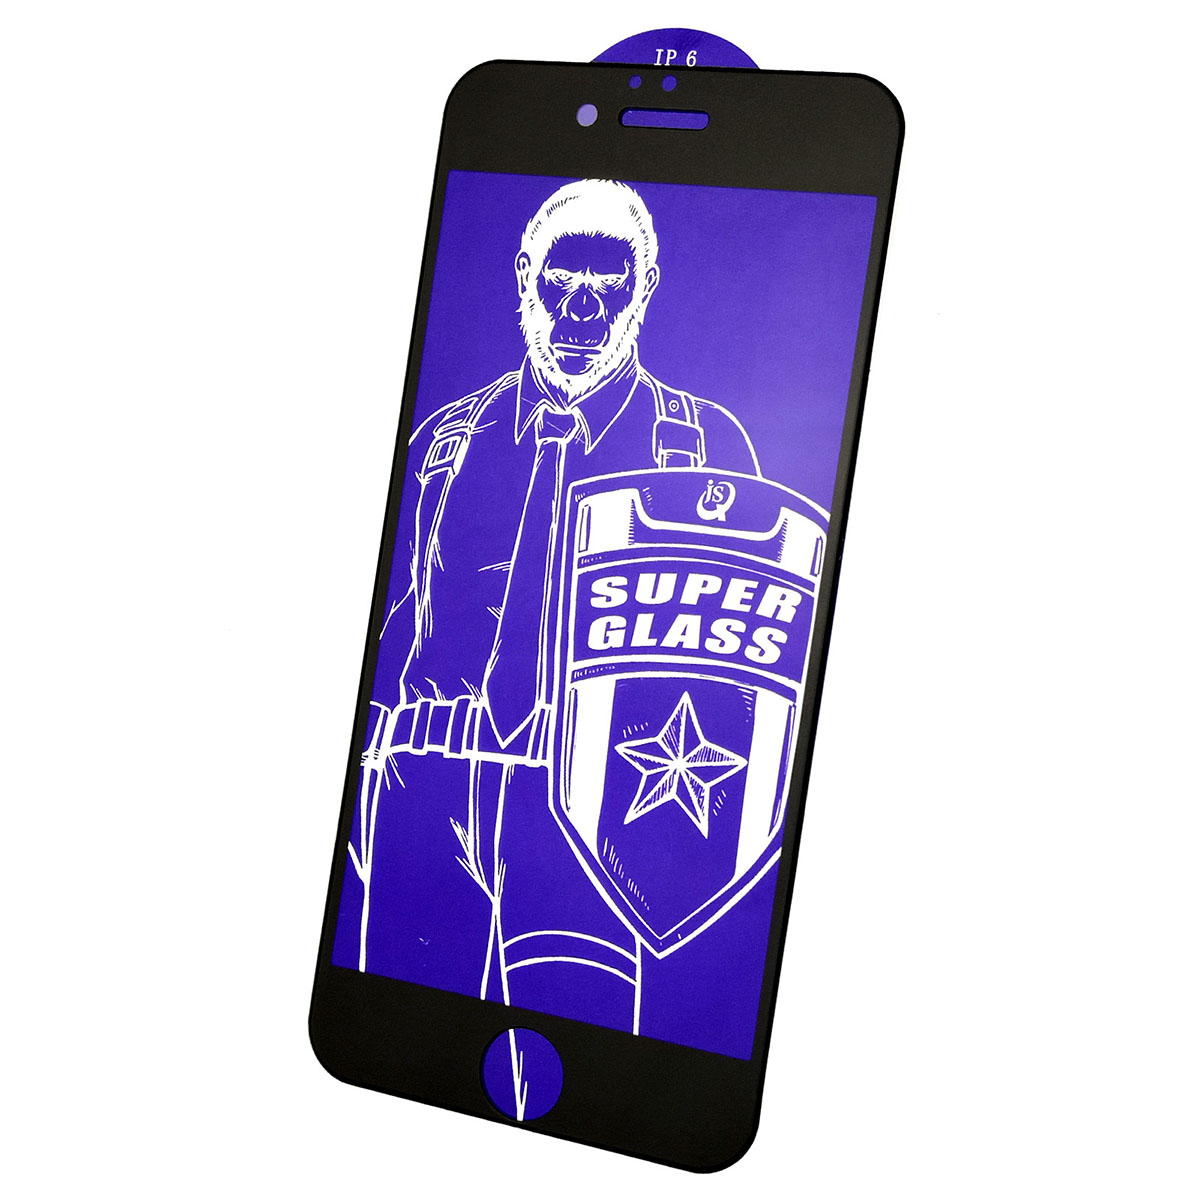 Защитное стекло 5D Super Glass OG для APPLE iPhone 6, iPhone 6S, цвет канта черный.